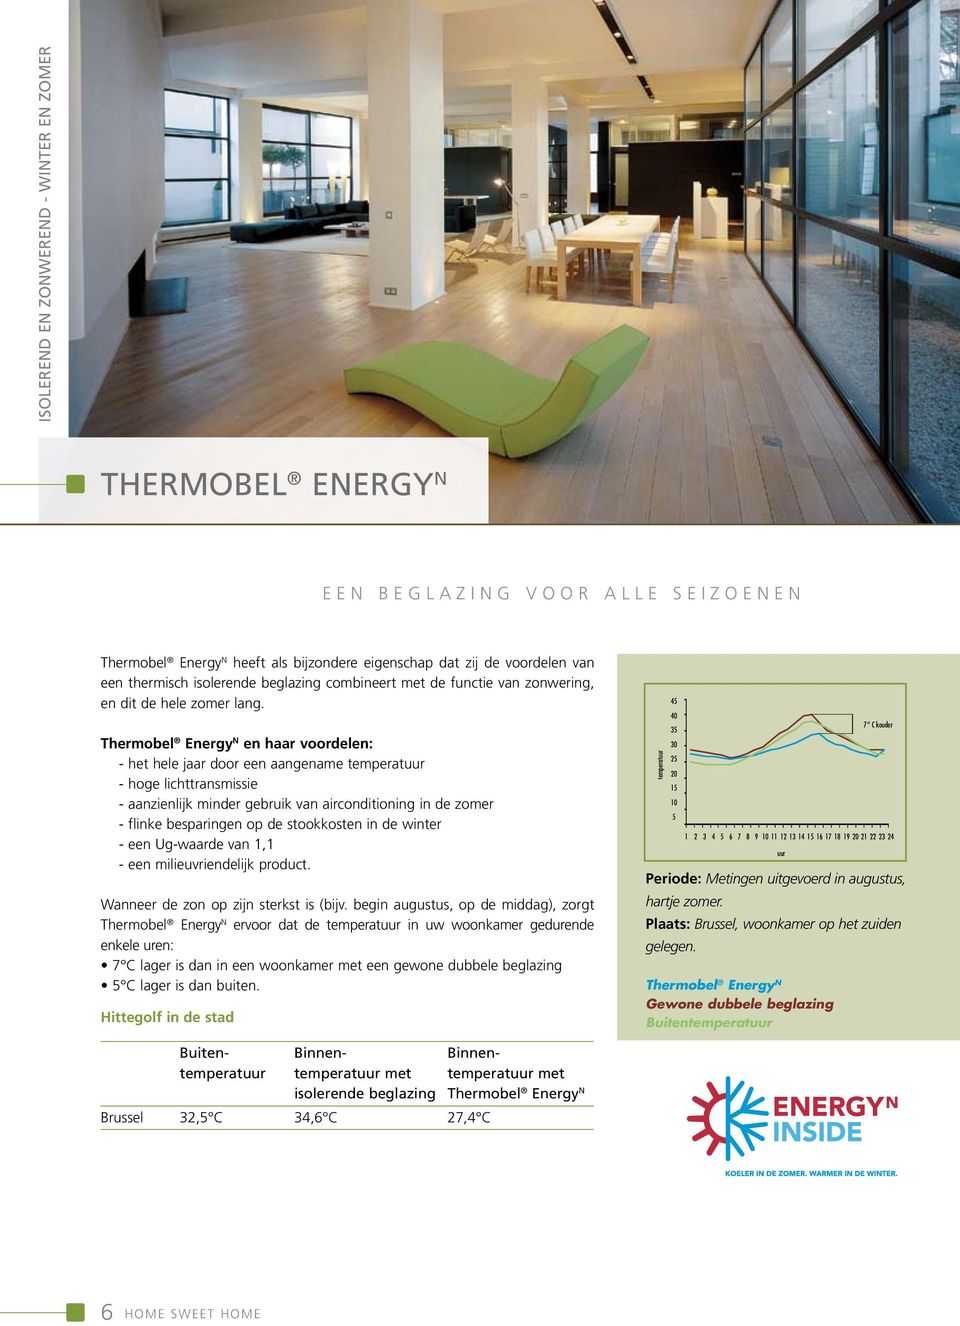 Thermobel Energy N en haar voordelen: - het hele jaar door een aangename temperatuur - hoge lichttransmissie - aanzienlijk minder gebruik van airconditioning in de zomer - flinke besparingen op de